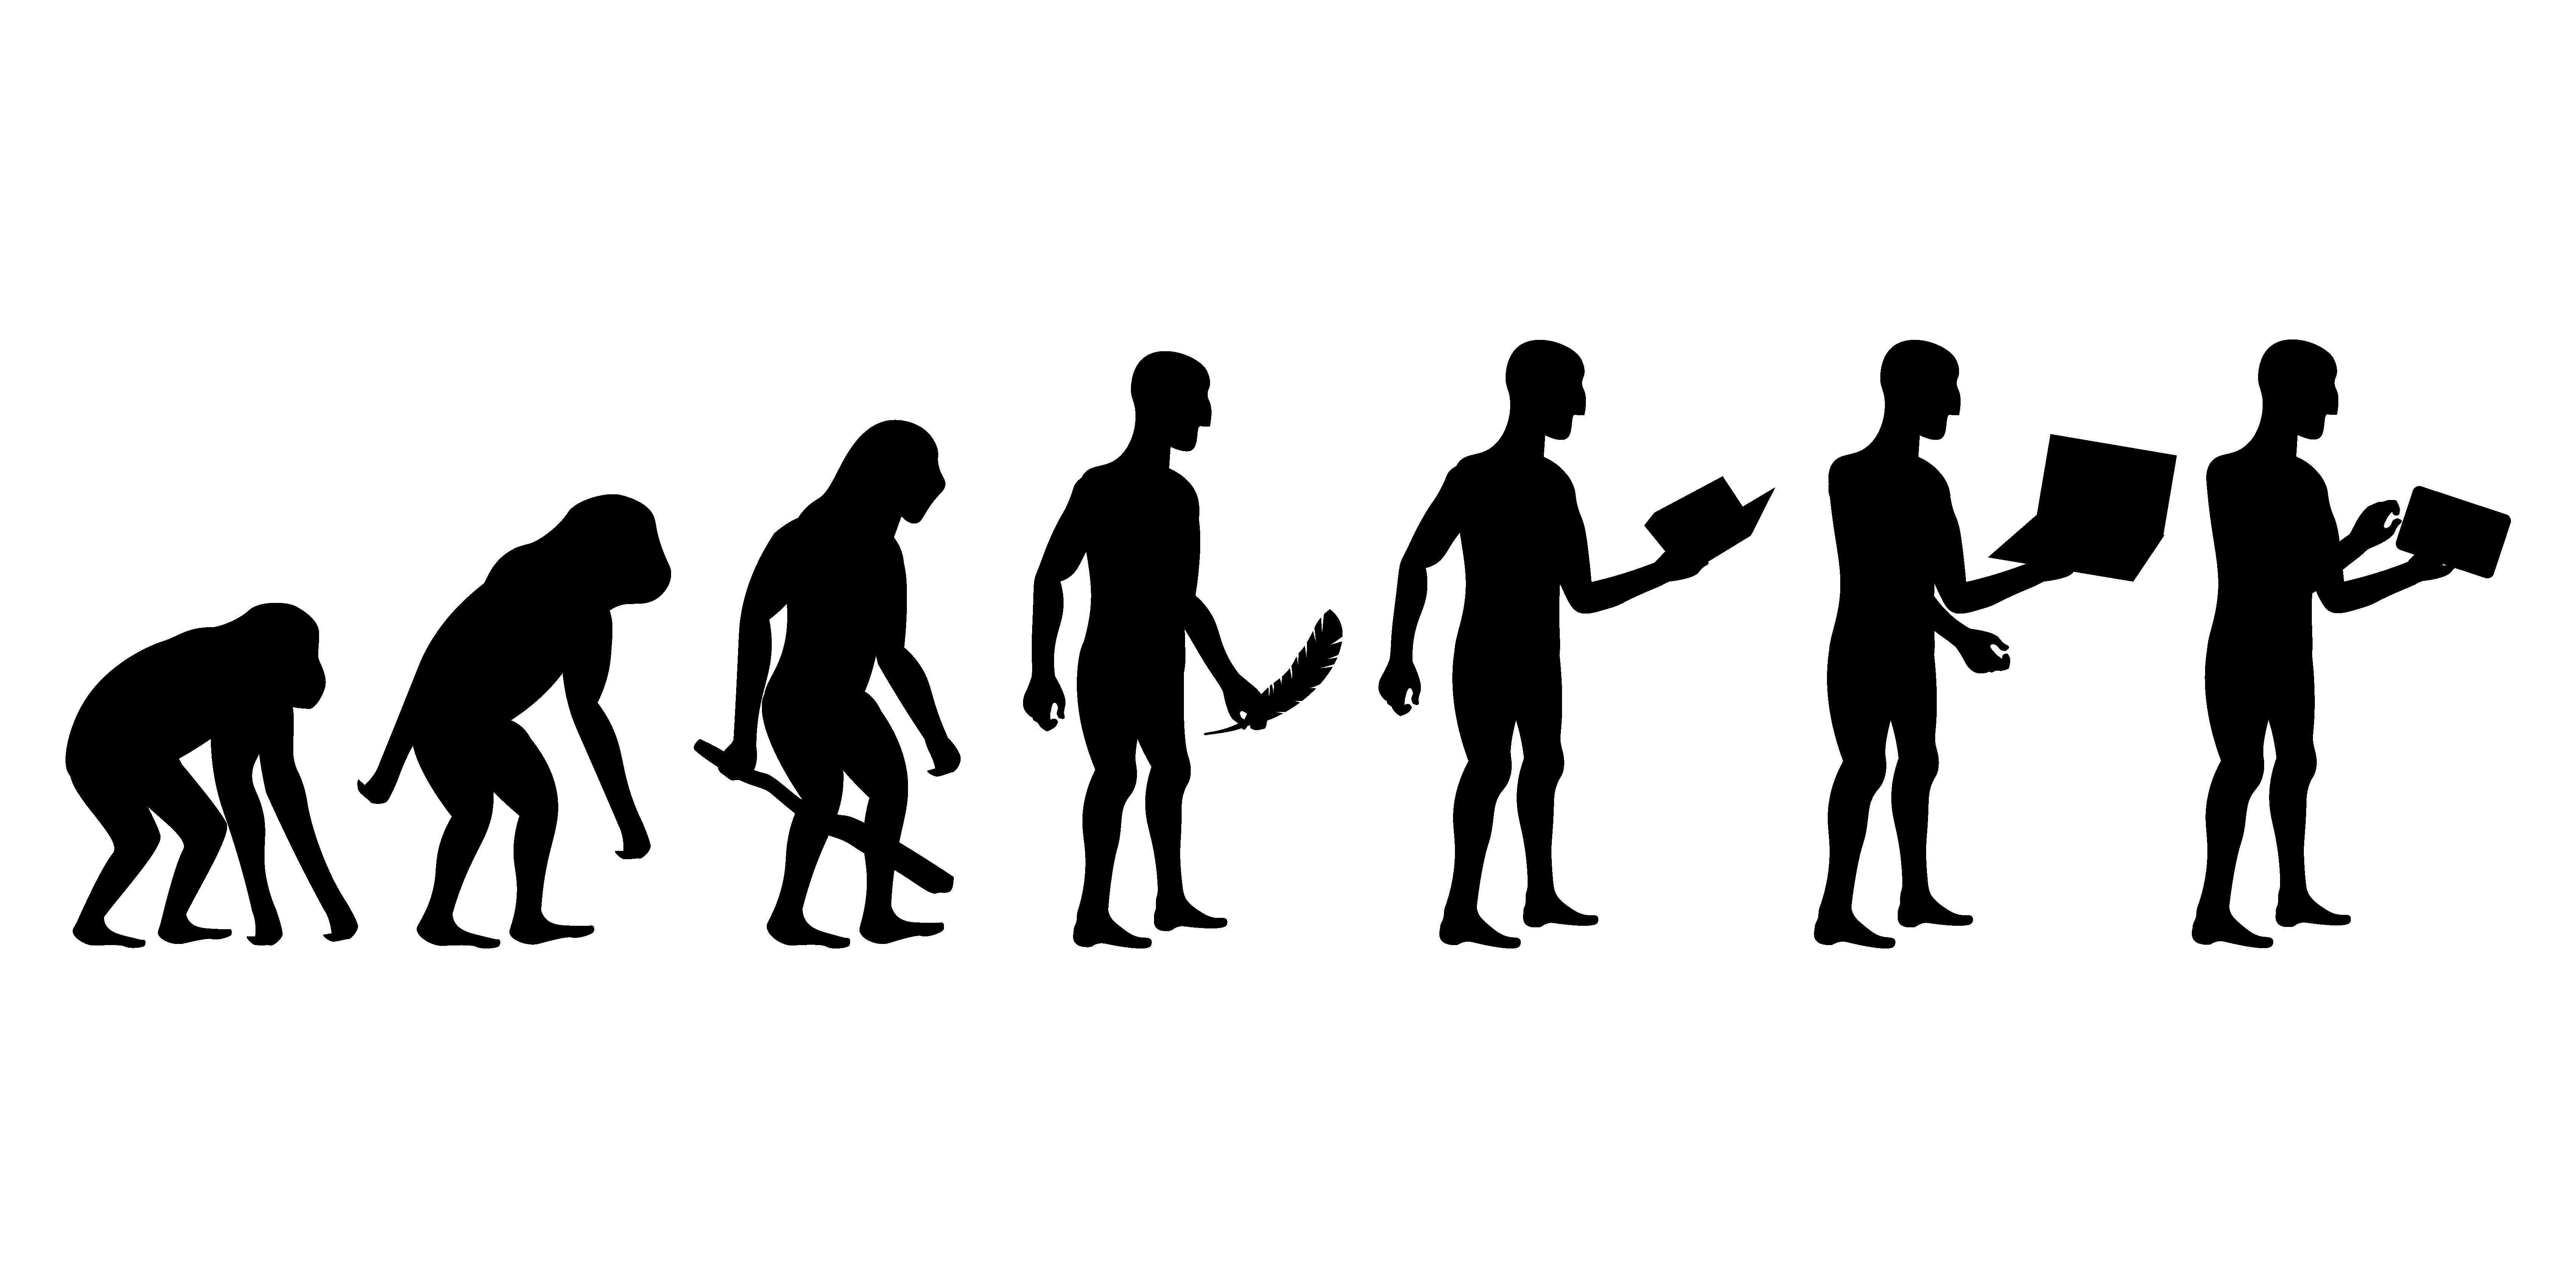 Human h. Эволюция человека. От обезьяны к человеку. Эволюция человека от обезьяны. Эволюция на белом фоне.